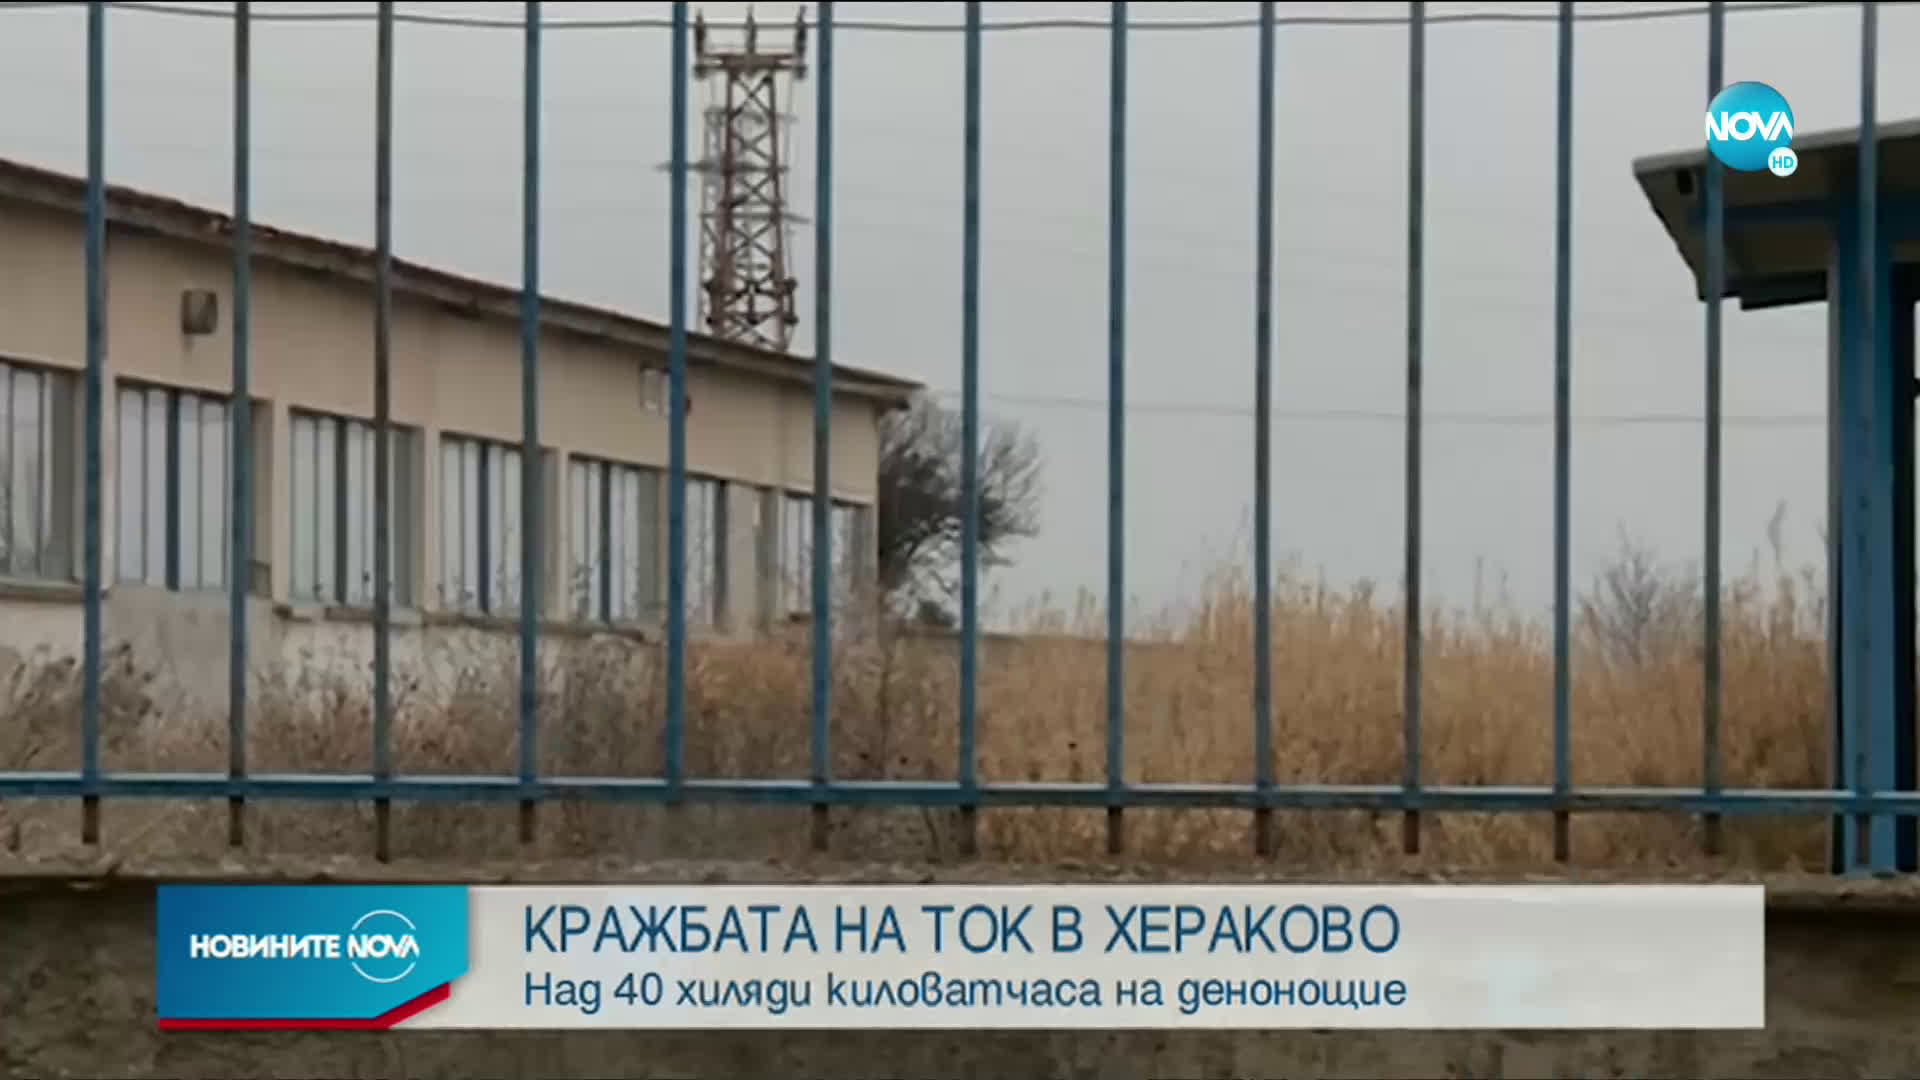 Над 40 000 киловатчаса на денонощие крадени в Хераково